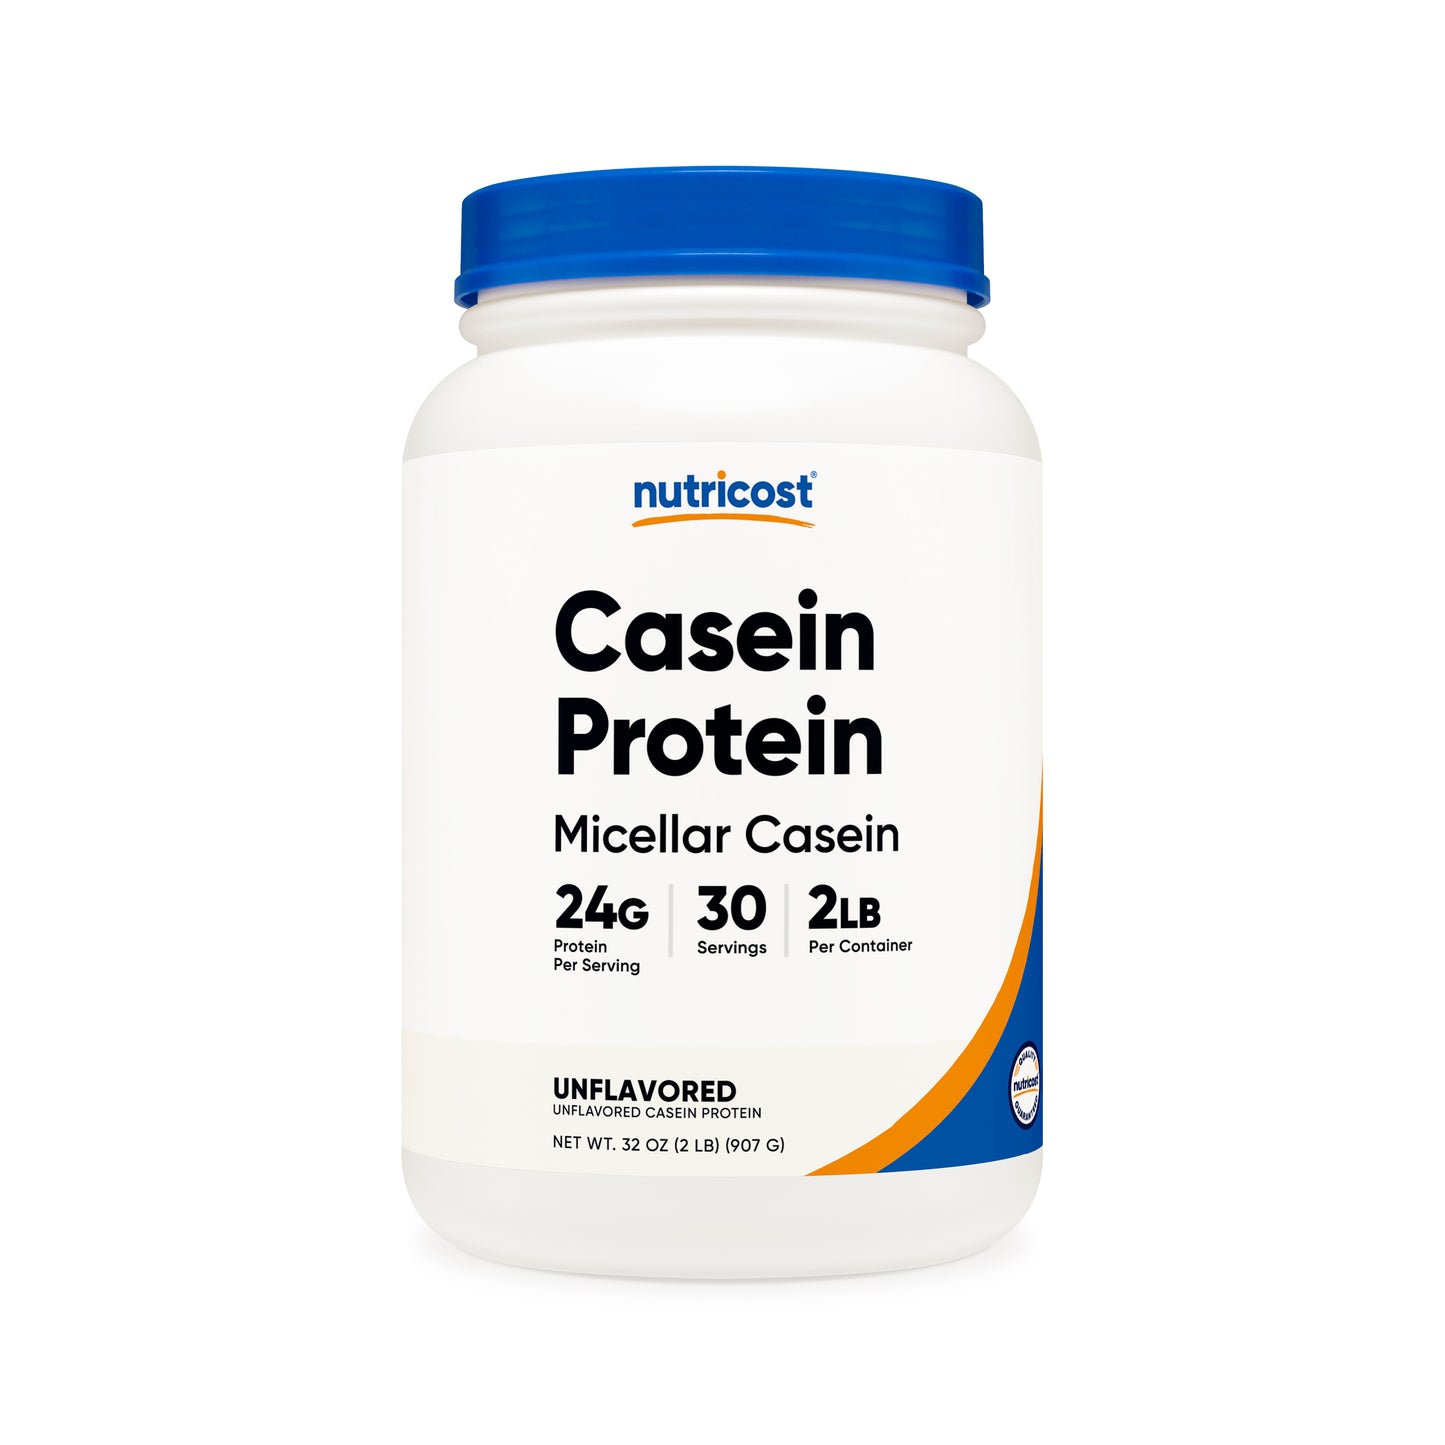 Nutricost Casein Protein Powder